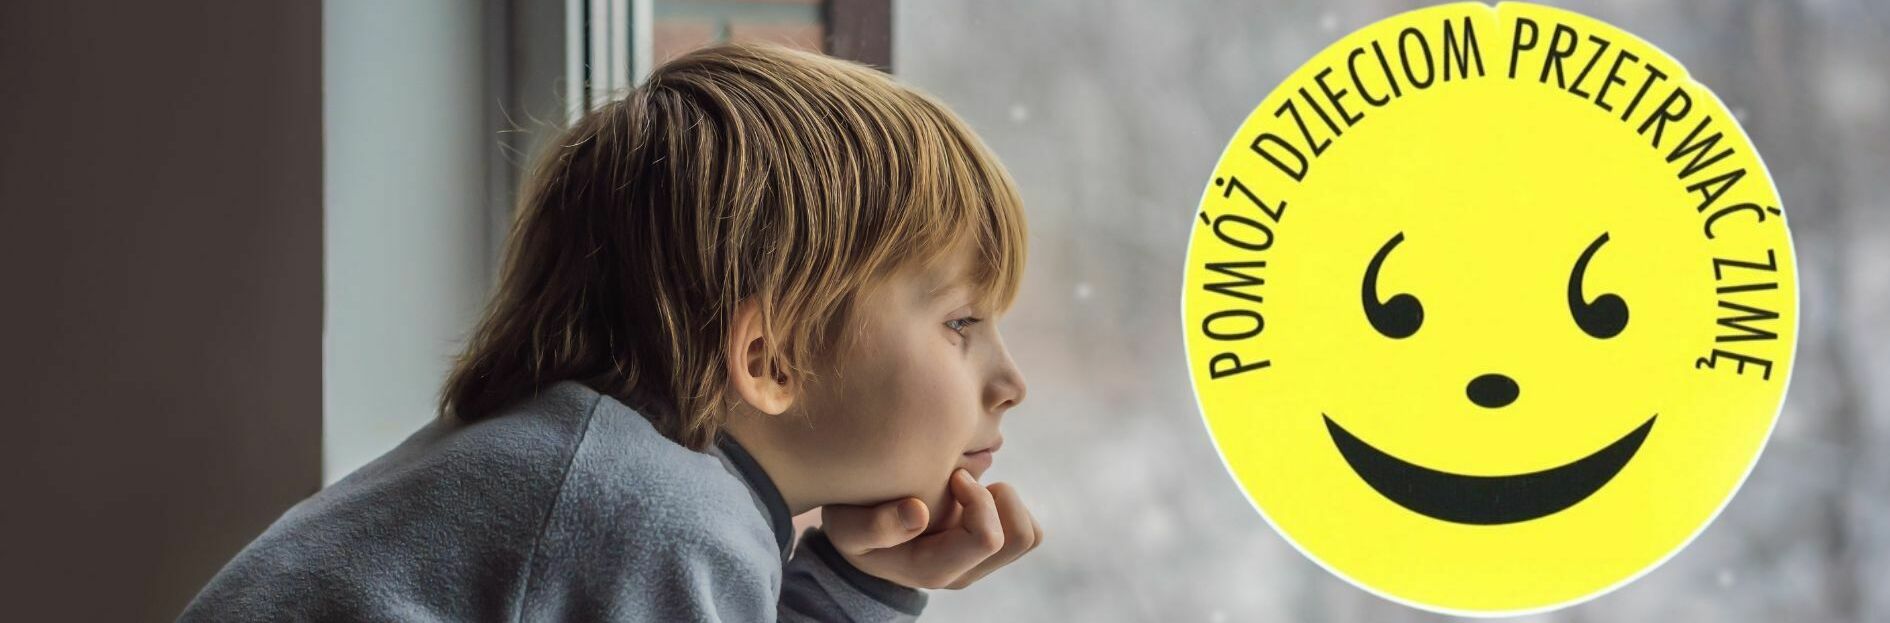 Dziecko spogląda przez okno obok naklejki z uśmiechniętą buźką i napisem "Pomóż dzieciom przetrwać zimę".